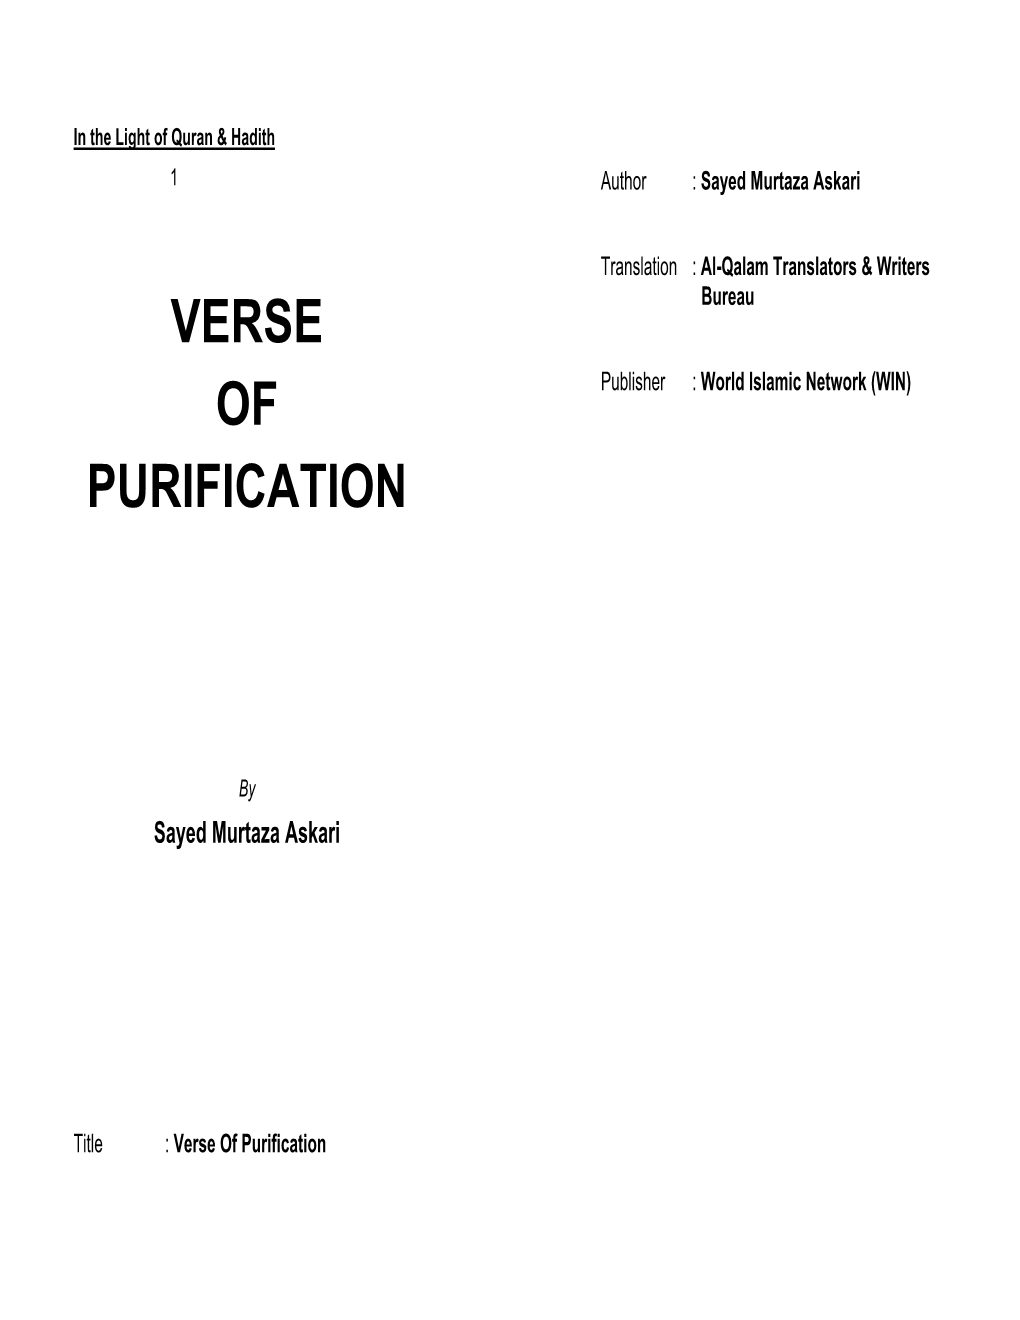 Verse of Purification Verse of Purification 3 4 Verse of Purification